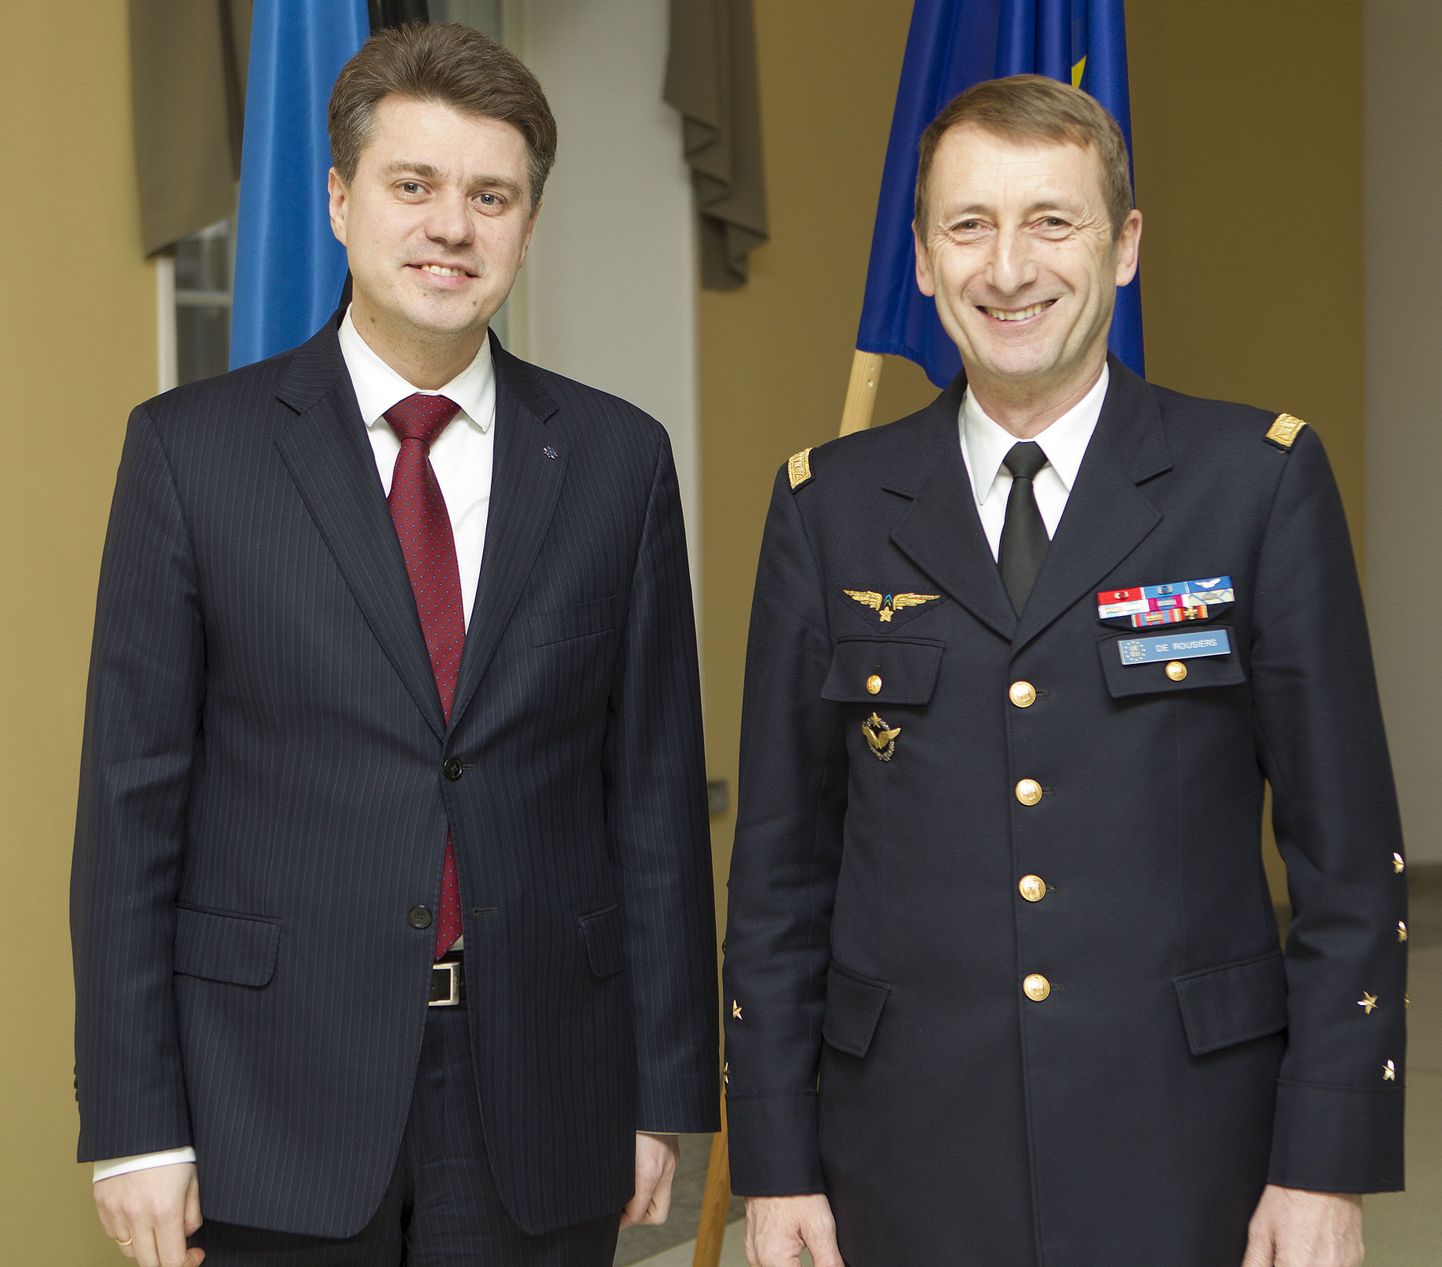 Kaitseminister kindral de Rousiers’iga täna kaitseministeeriumis.